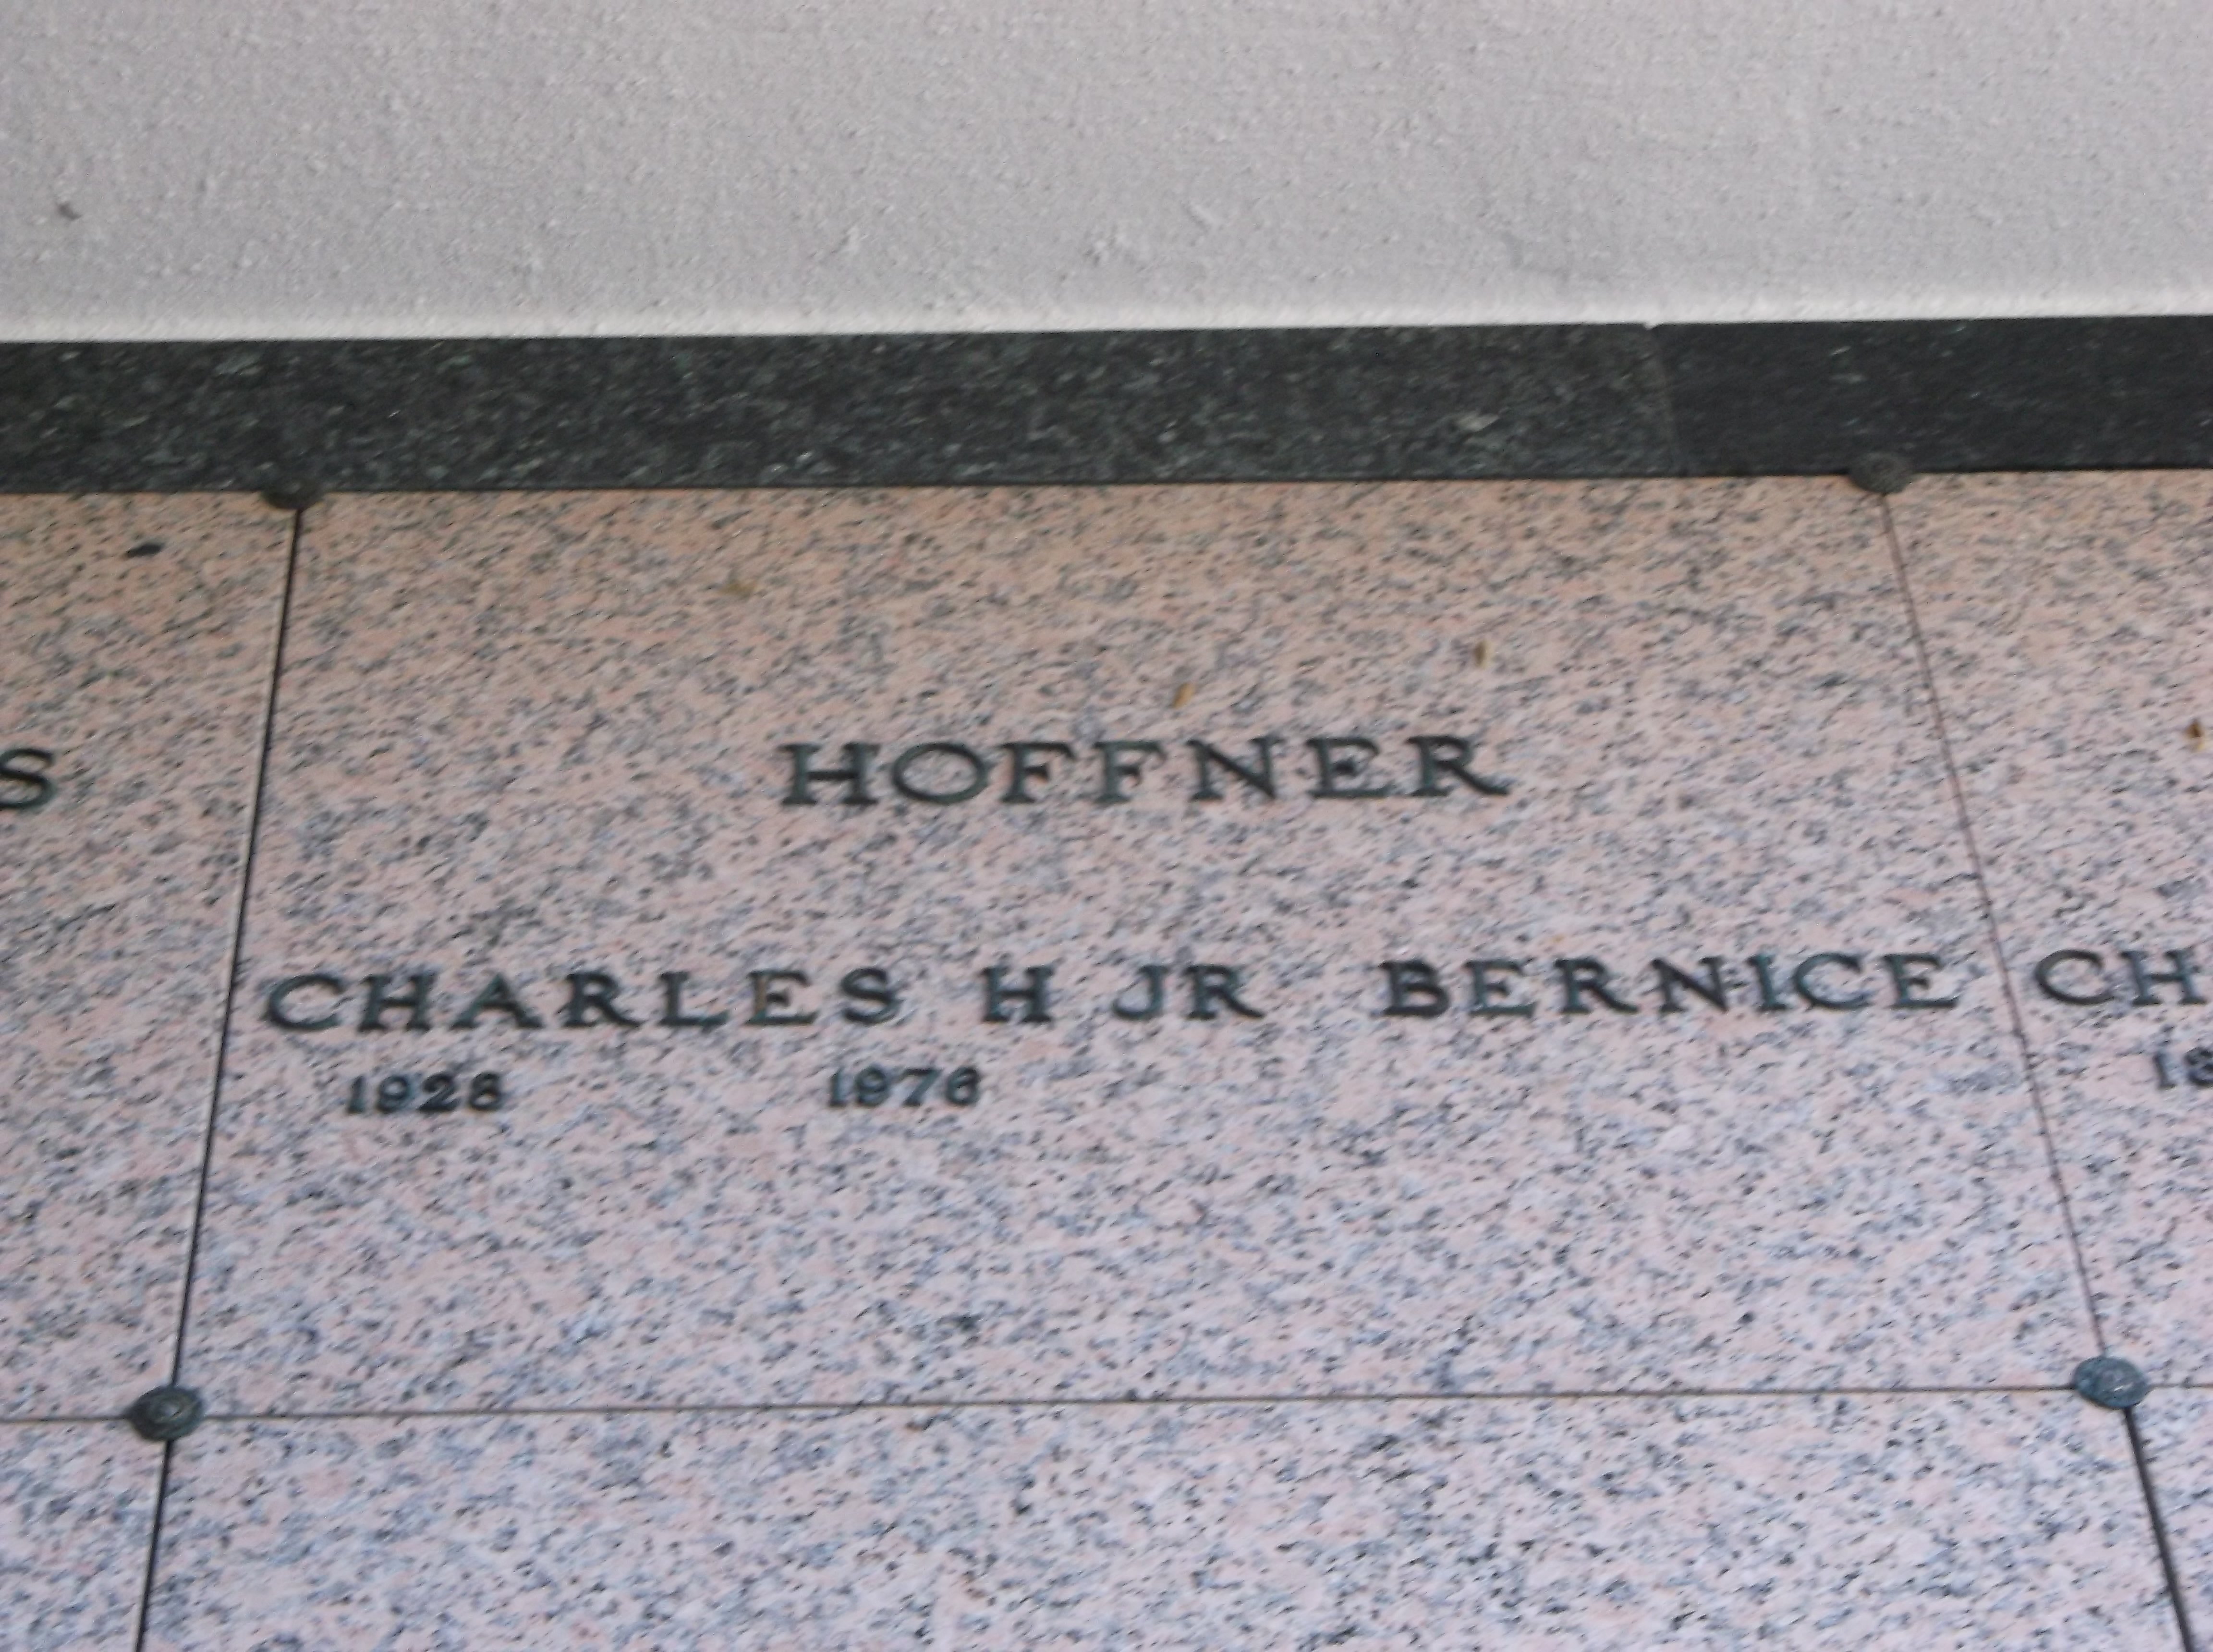 Charles H Hoffner, Jr